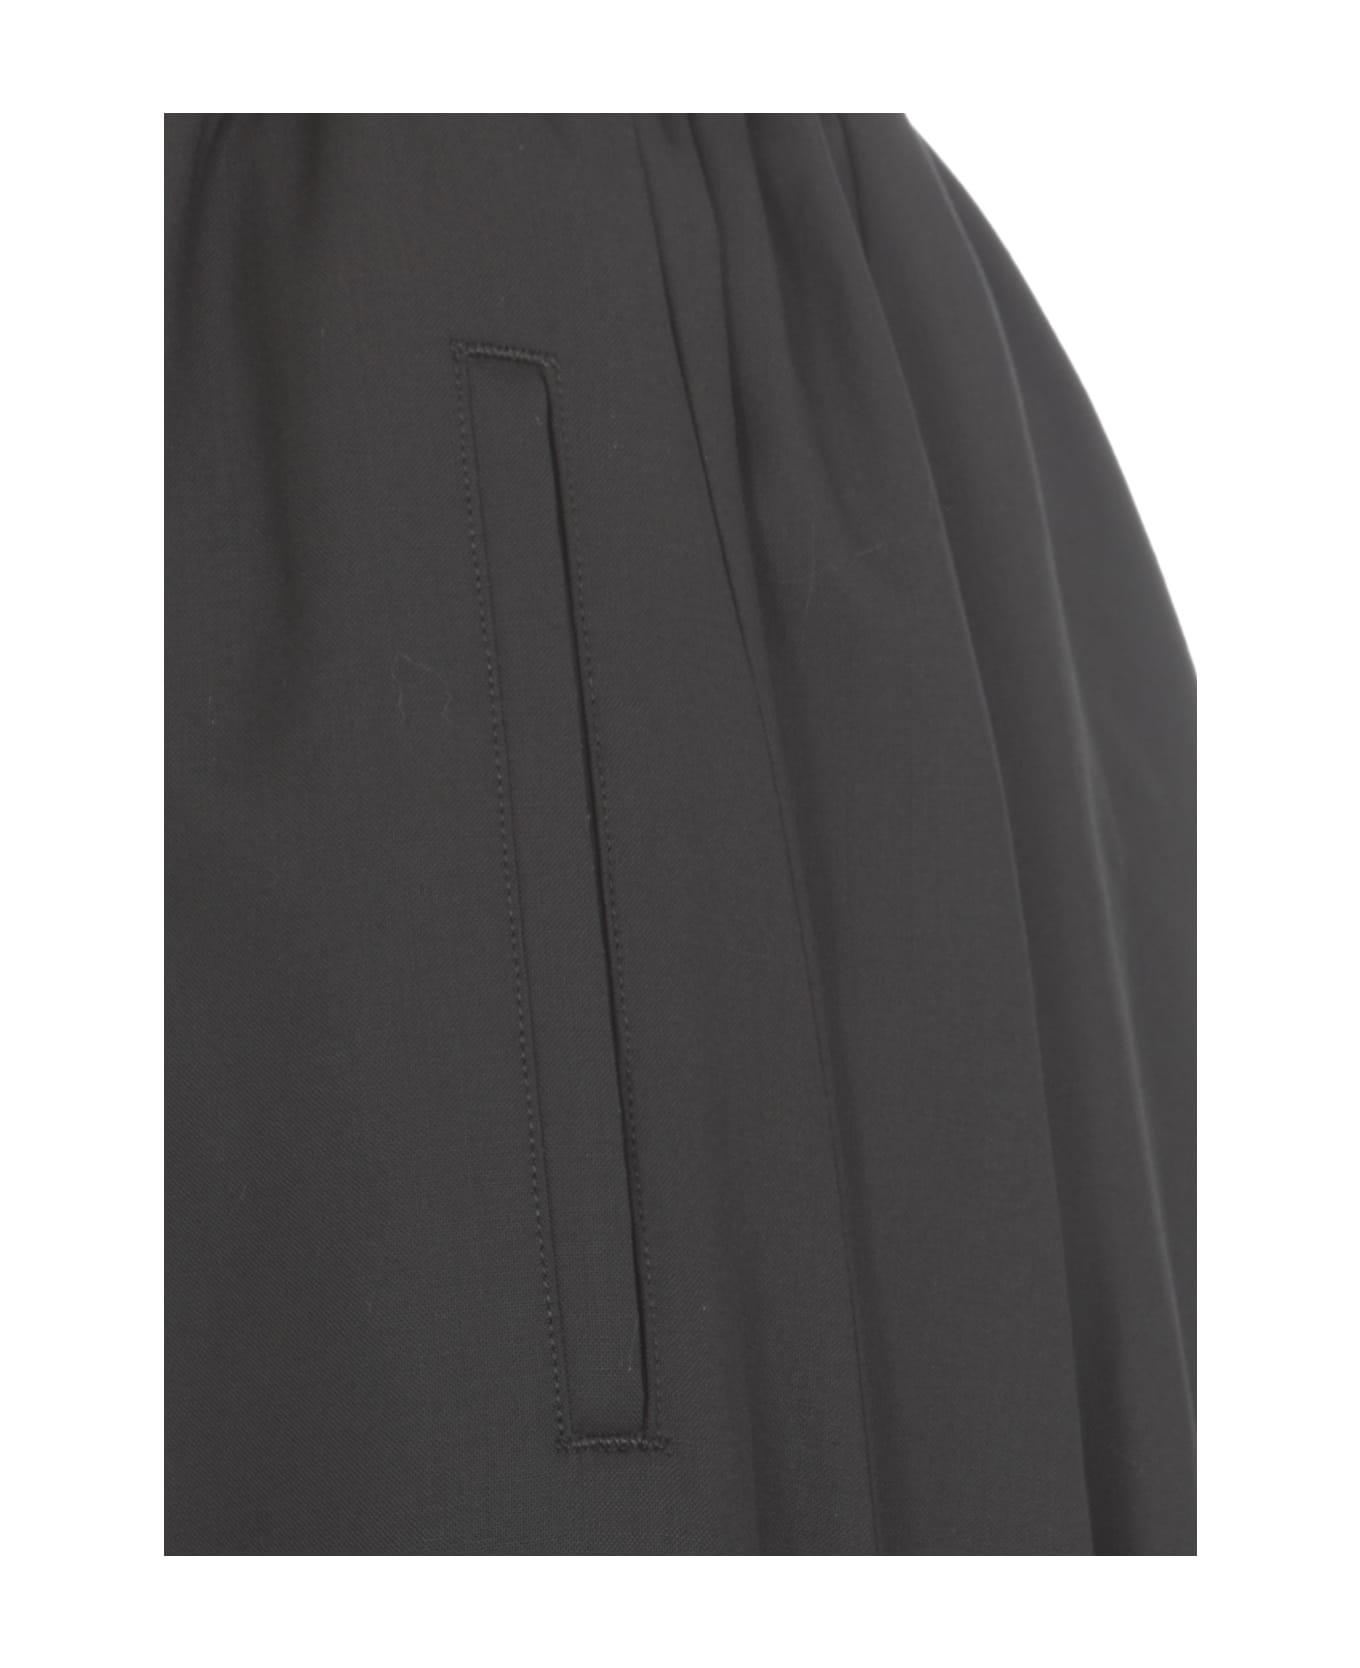 Yohji Yamamoto Wool Skirt - Black スカート